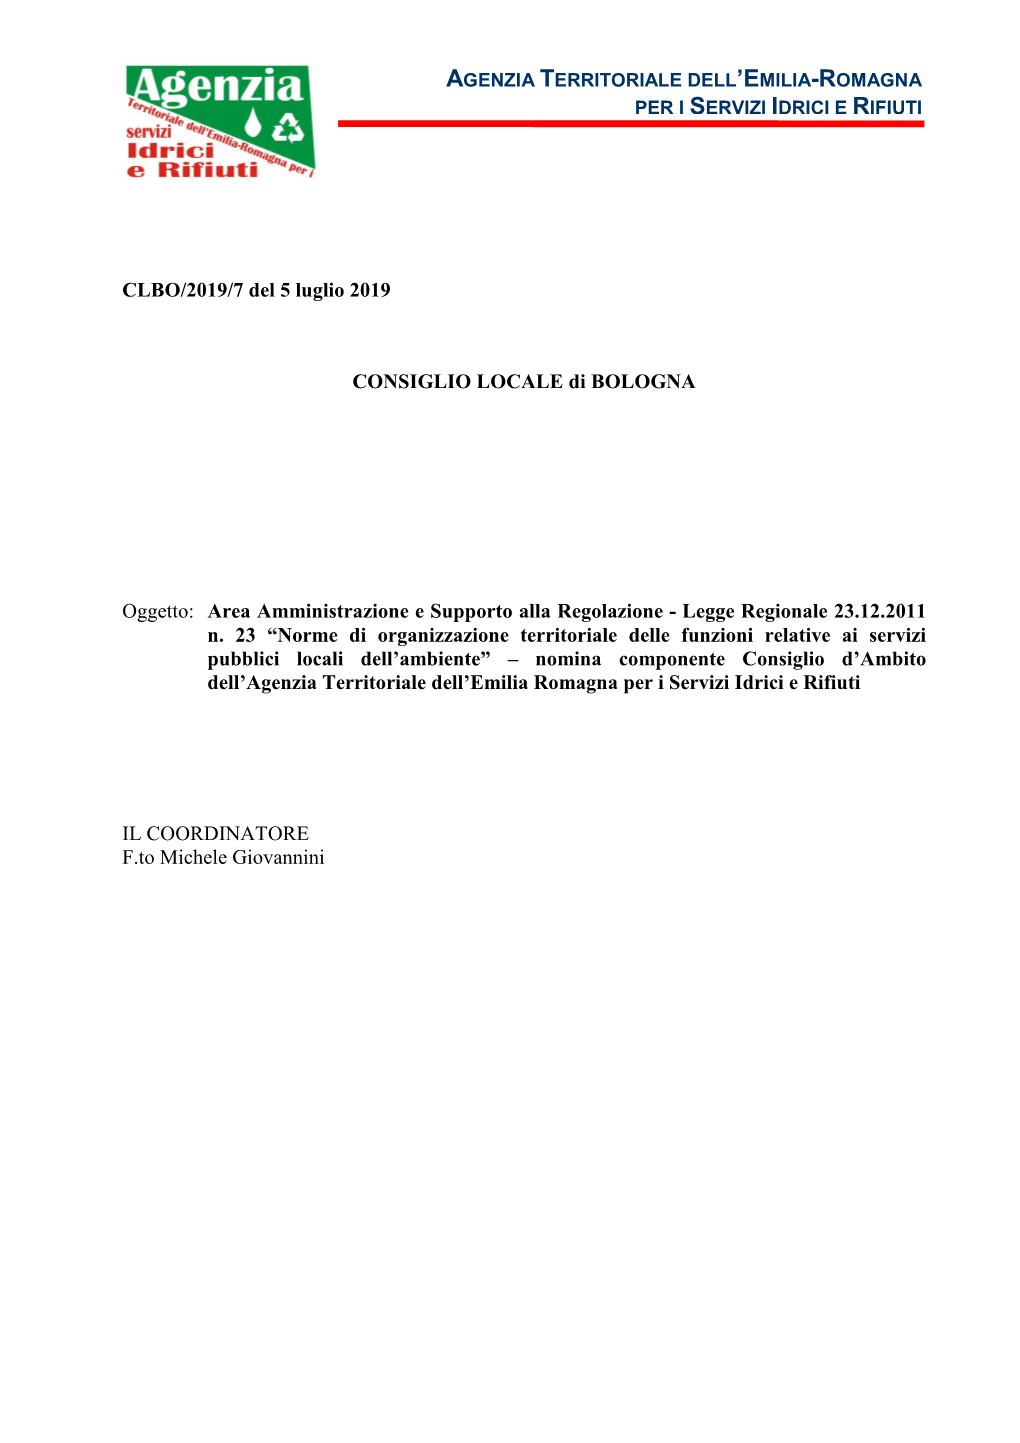 Deliberazione Del Consiglio Locale Di Bologna N. 7 Del 5 Luglio 2019